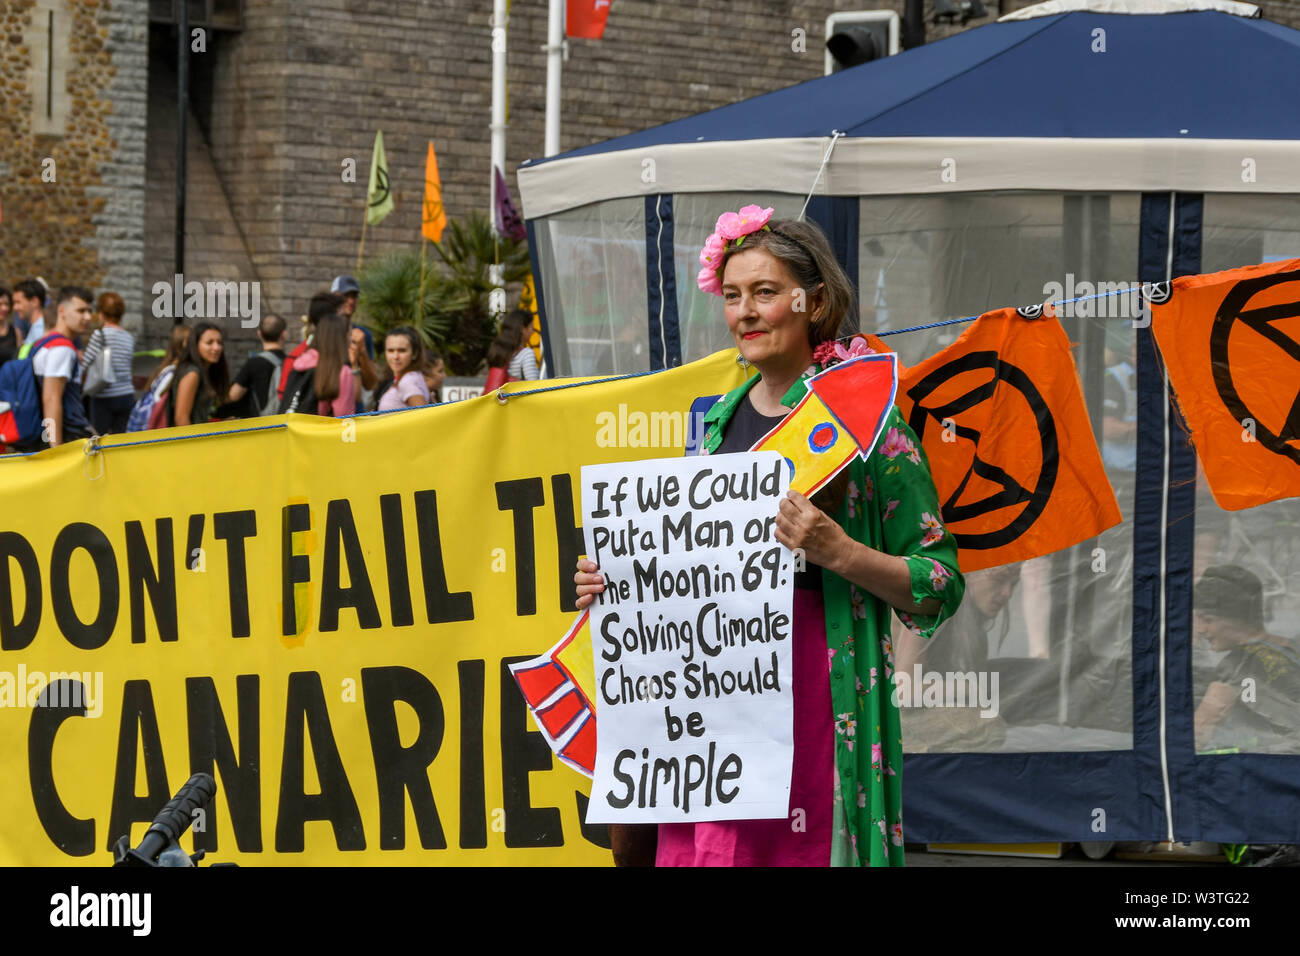 CARDIFF, WALES - Juillet 2019 : Personne ayant un avis accompagné d'un message à l'urgence climatique protestation de rébellion d'extinction dans le centre-ville de Cardiff. Banque D'Images